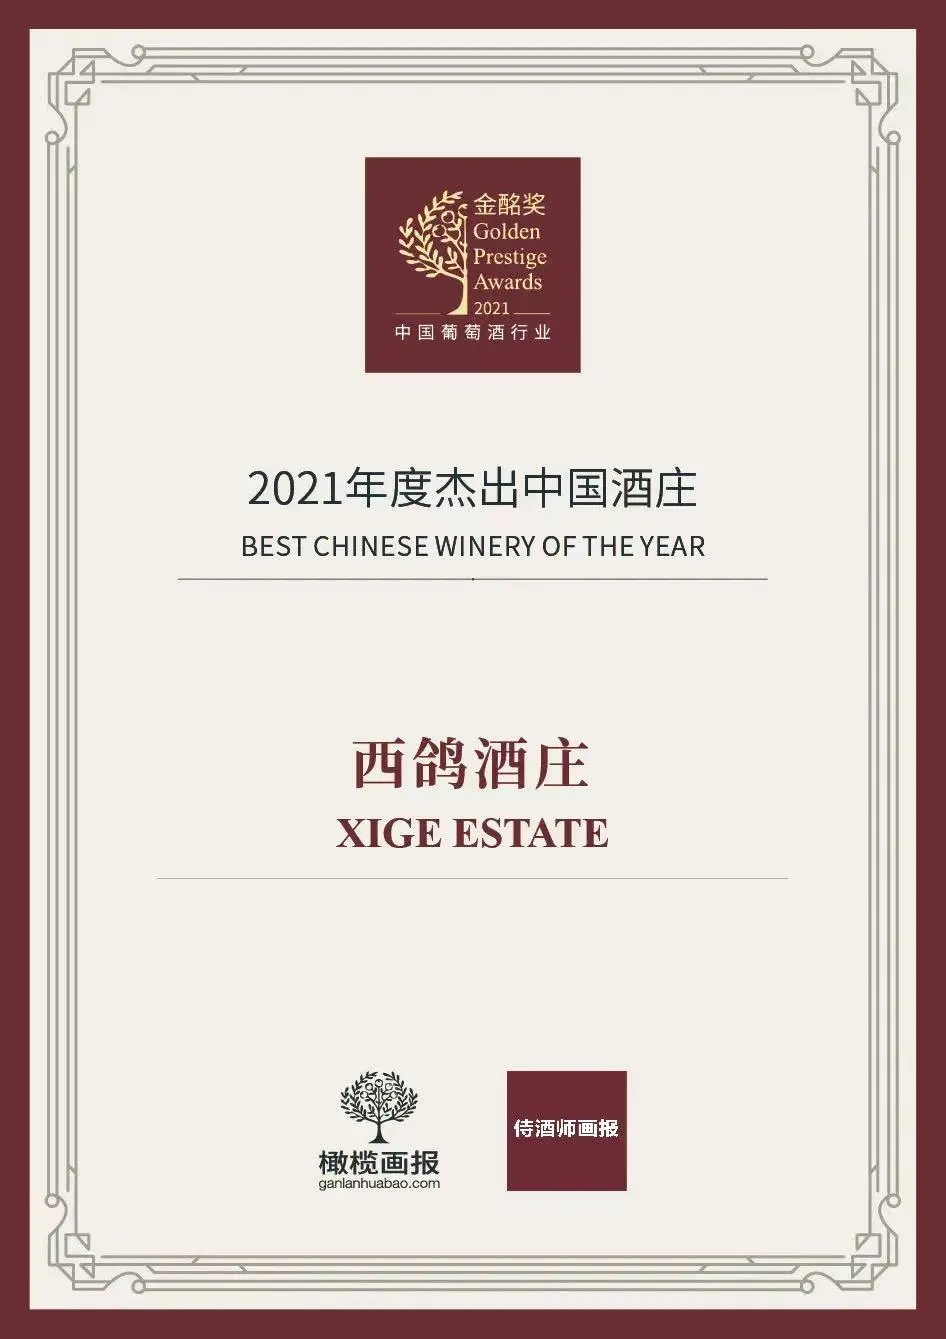 西鴿酒莊榮獲2021年度傑出中(zhōng)國酒莊